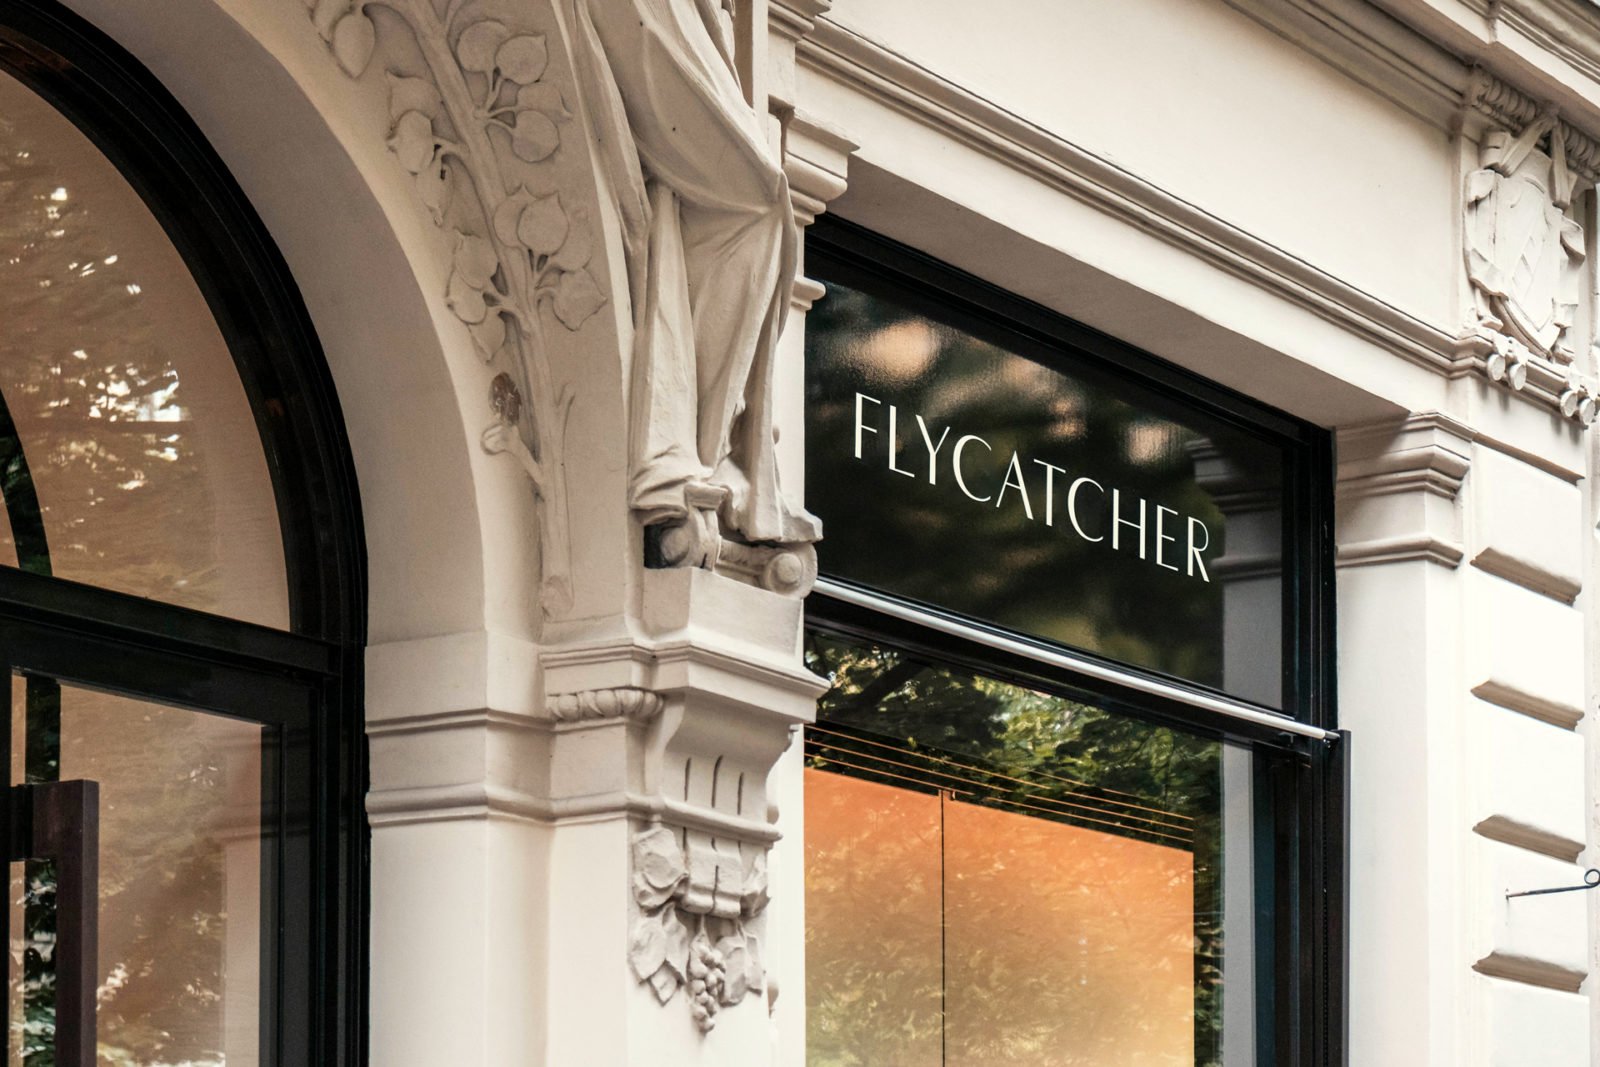 Flycatcher Mens Skincare Brand Storefront Sign Design